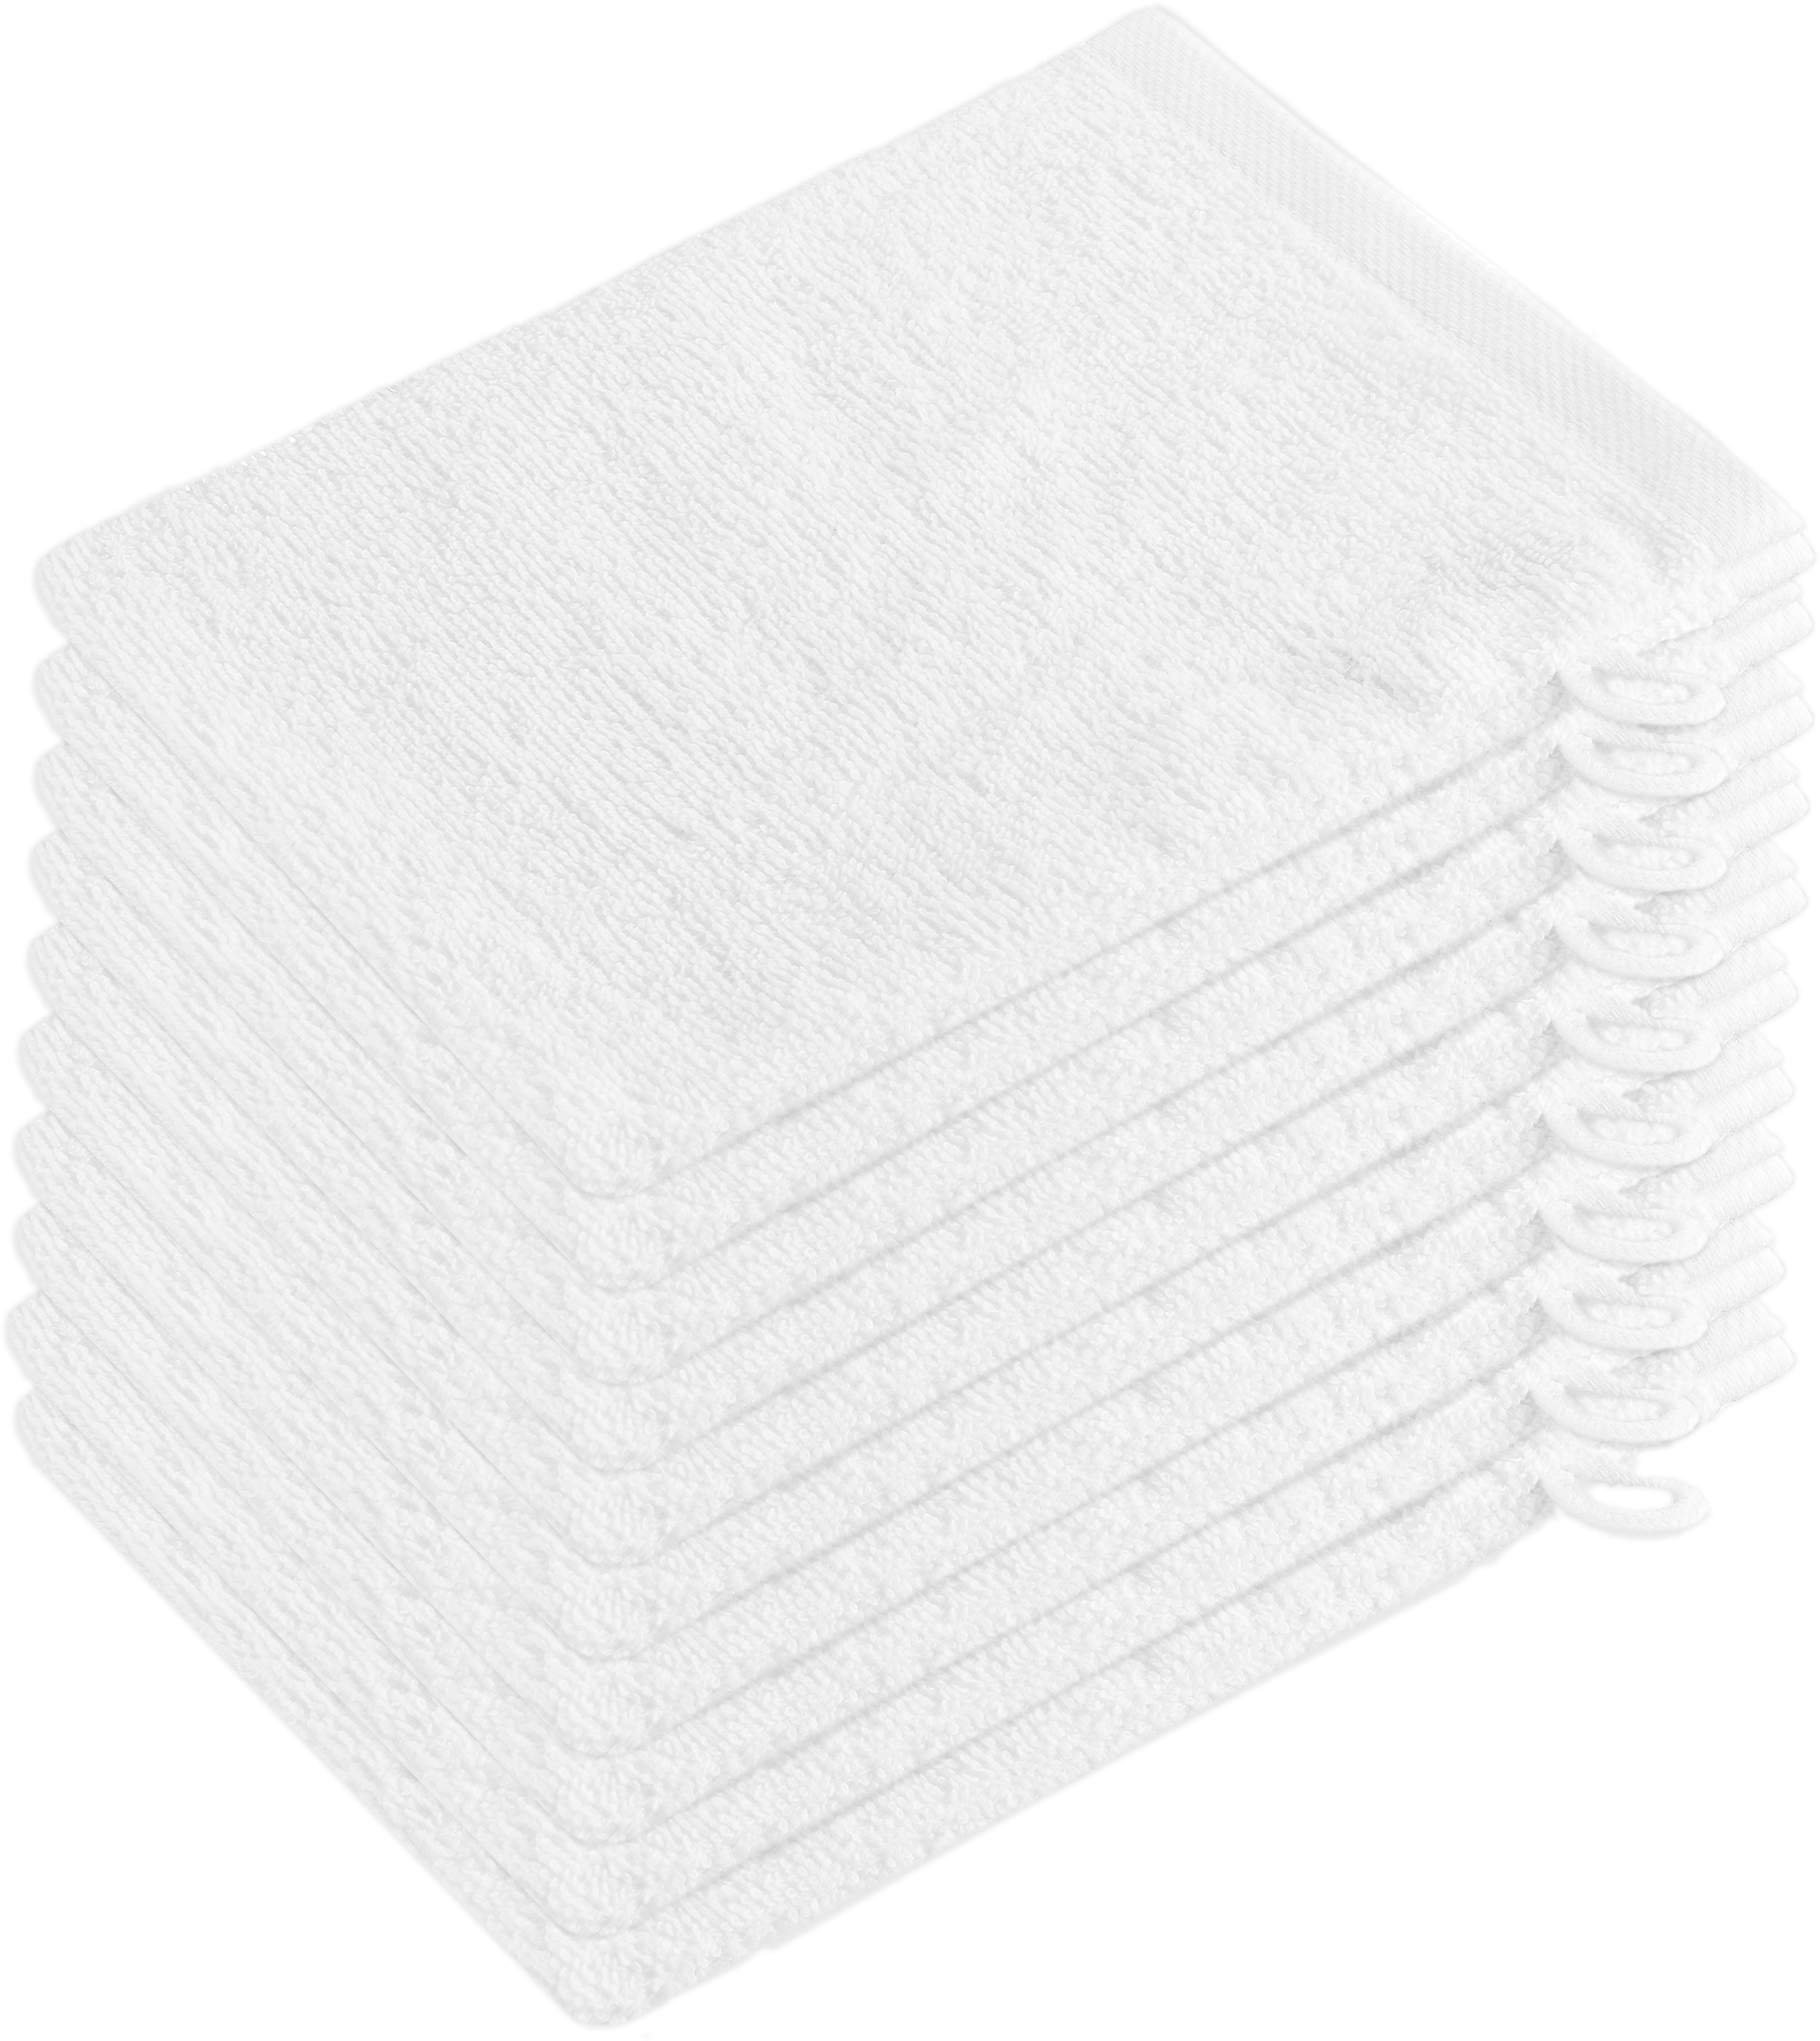 Waschhandschuh 10er-Set, 100% Baumwolle, 16x21 cm, weiß